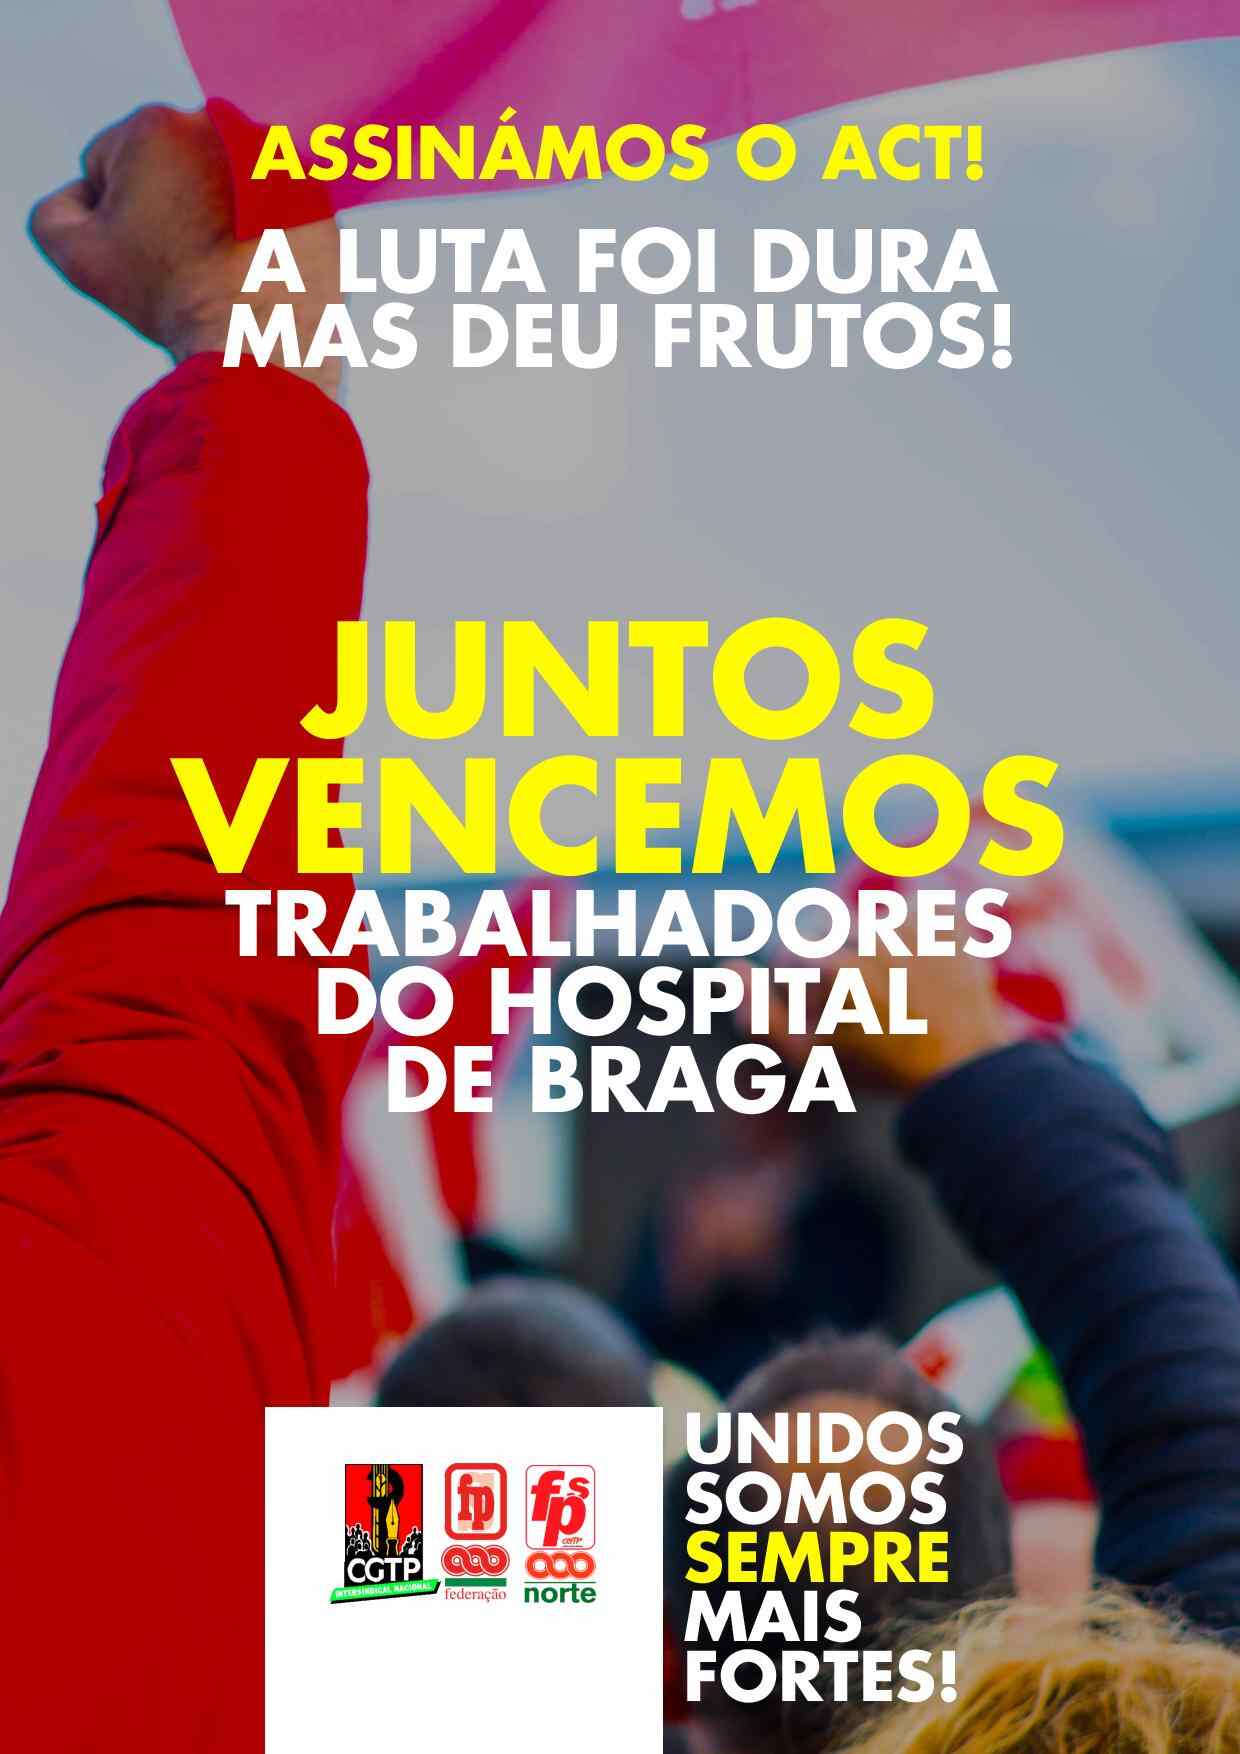 Vitória dos trabalhadores do Hospital de Braga